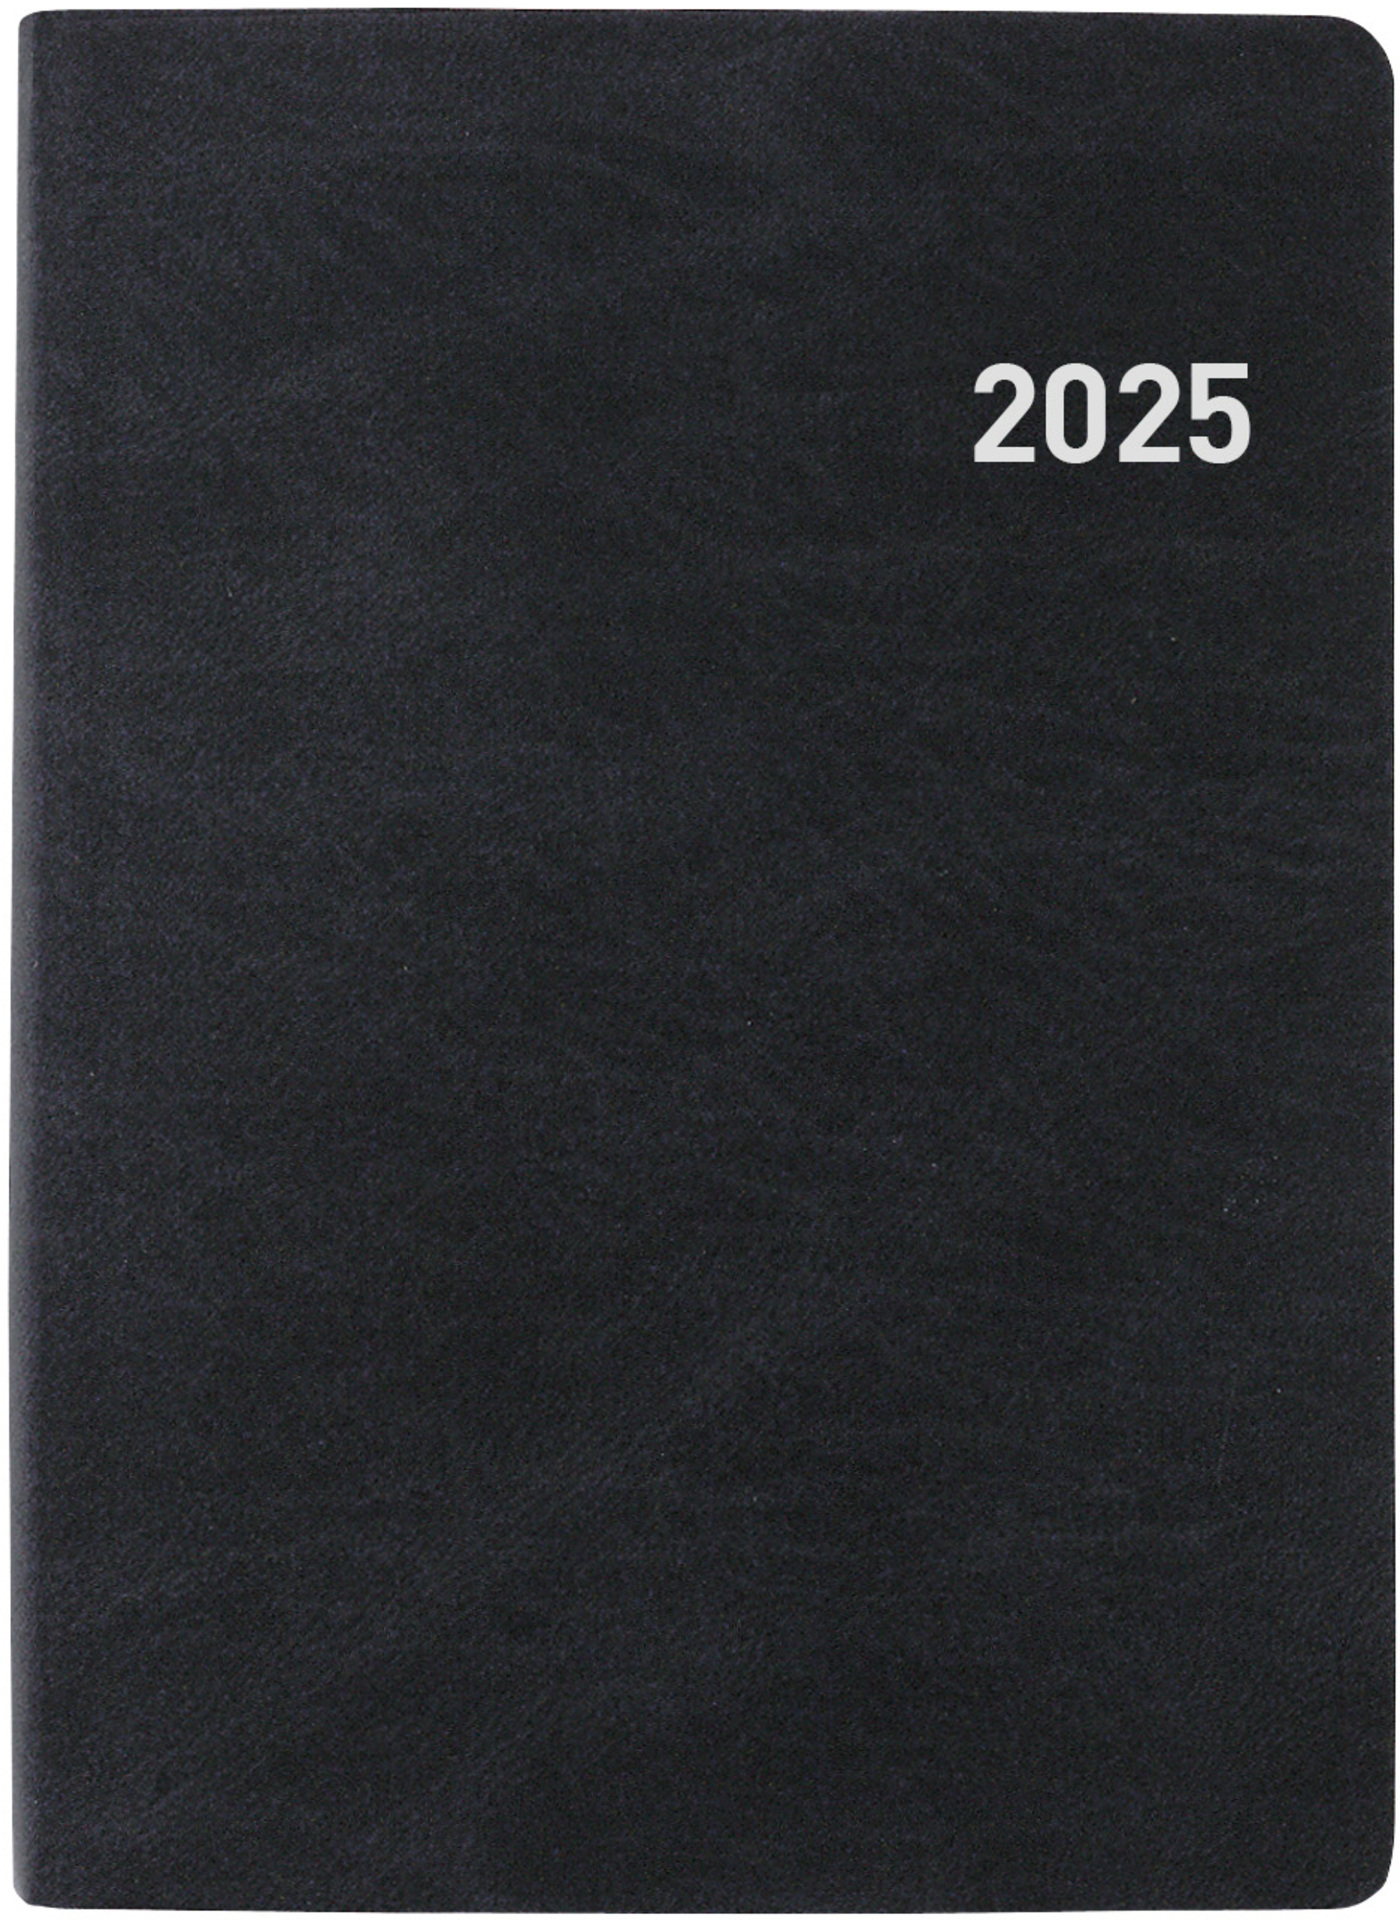 BIELLA Agenda Memento 2025 825401020025 1S/2P noir ML 10.1x14.2cm